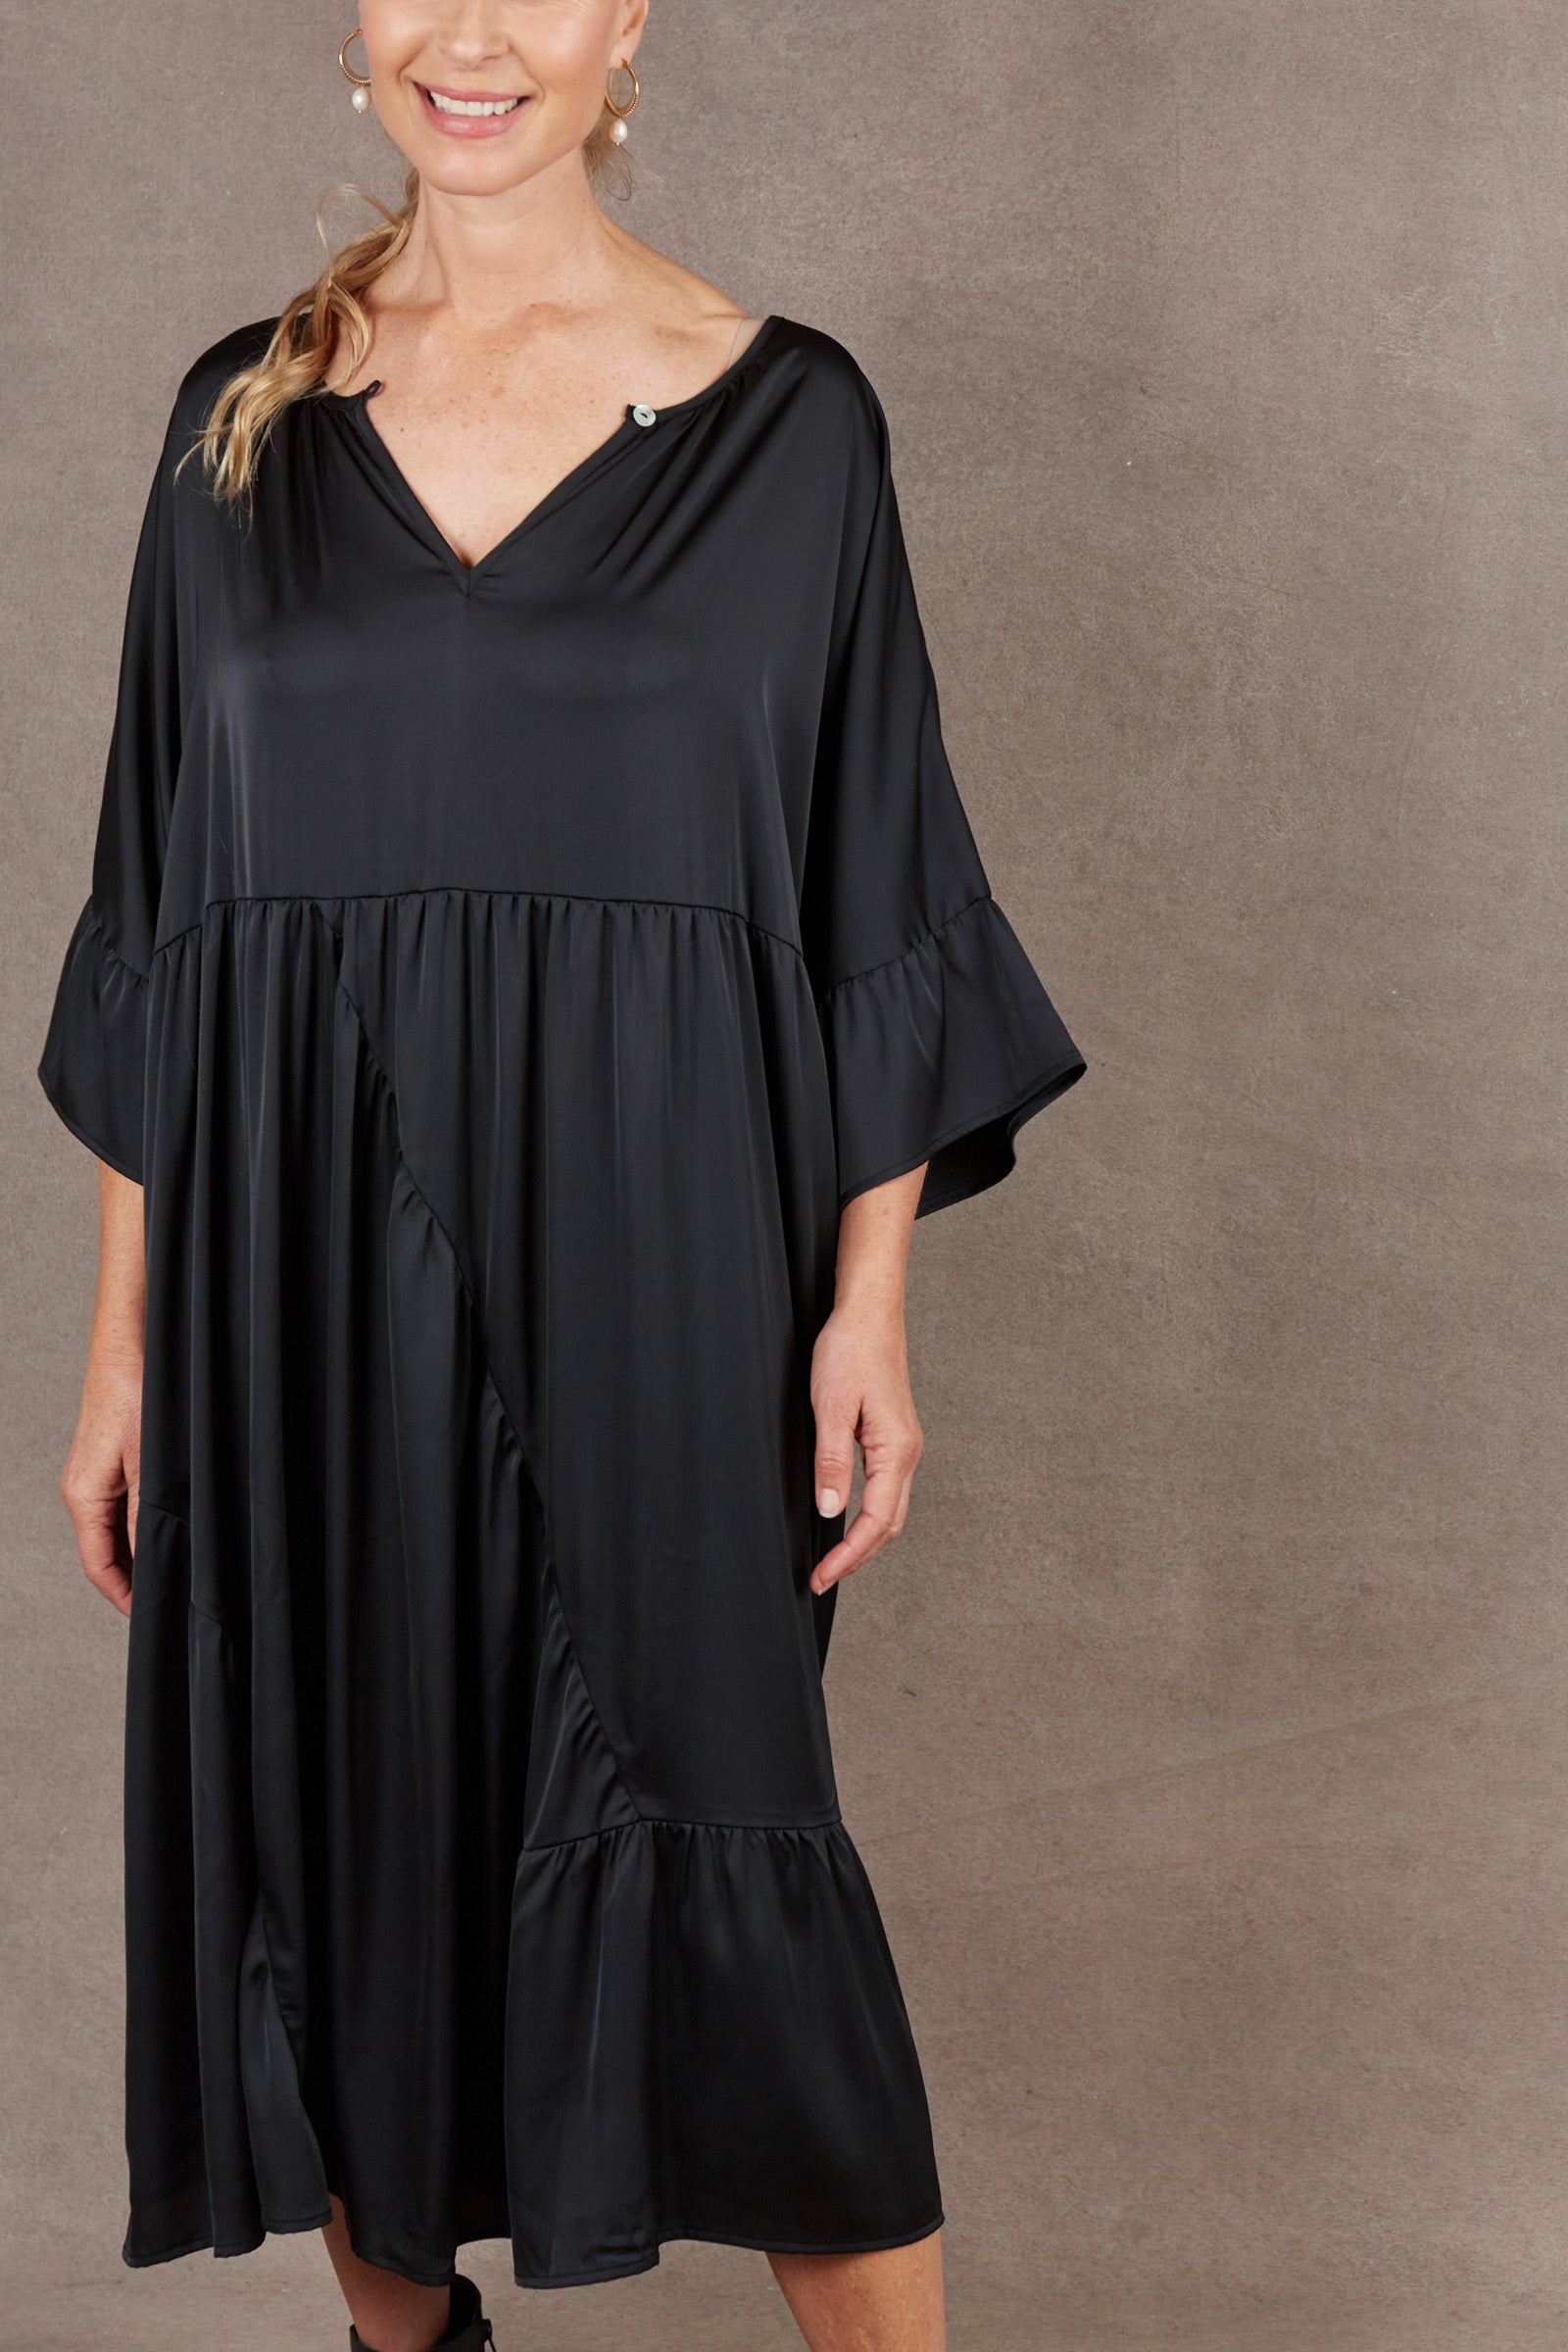 Norse Reversible Dress - Ebony - eb&ive Clothing - Dress Maxi One Size